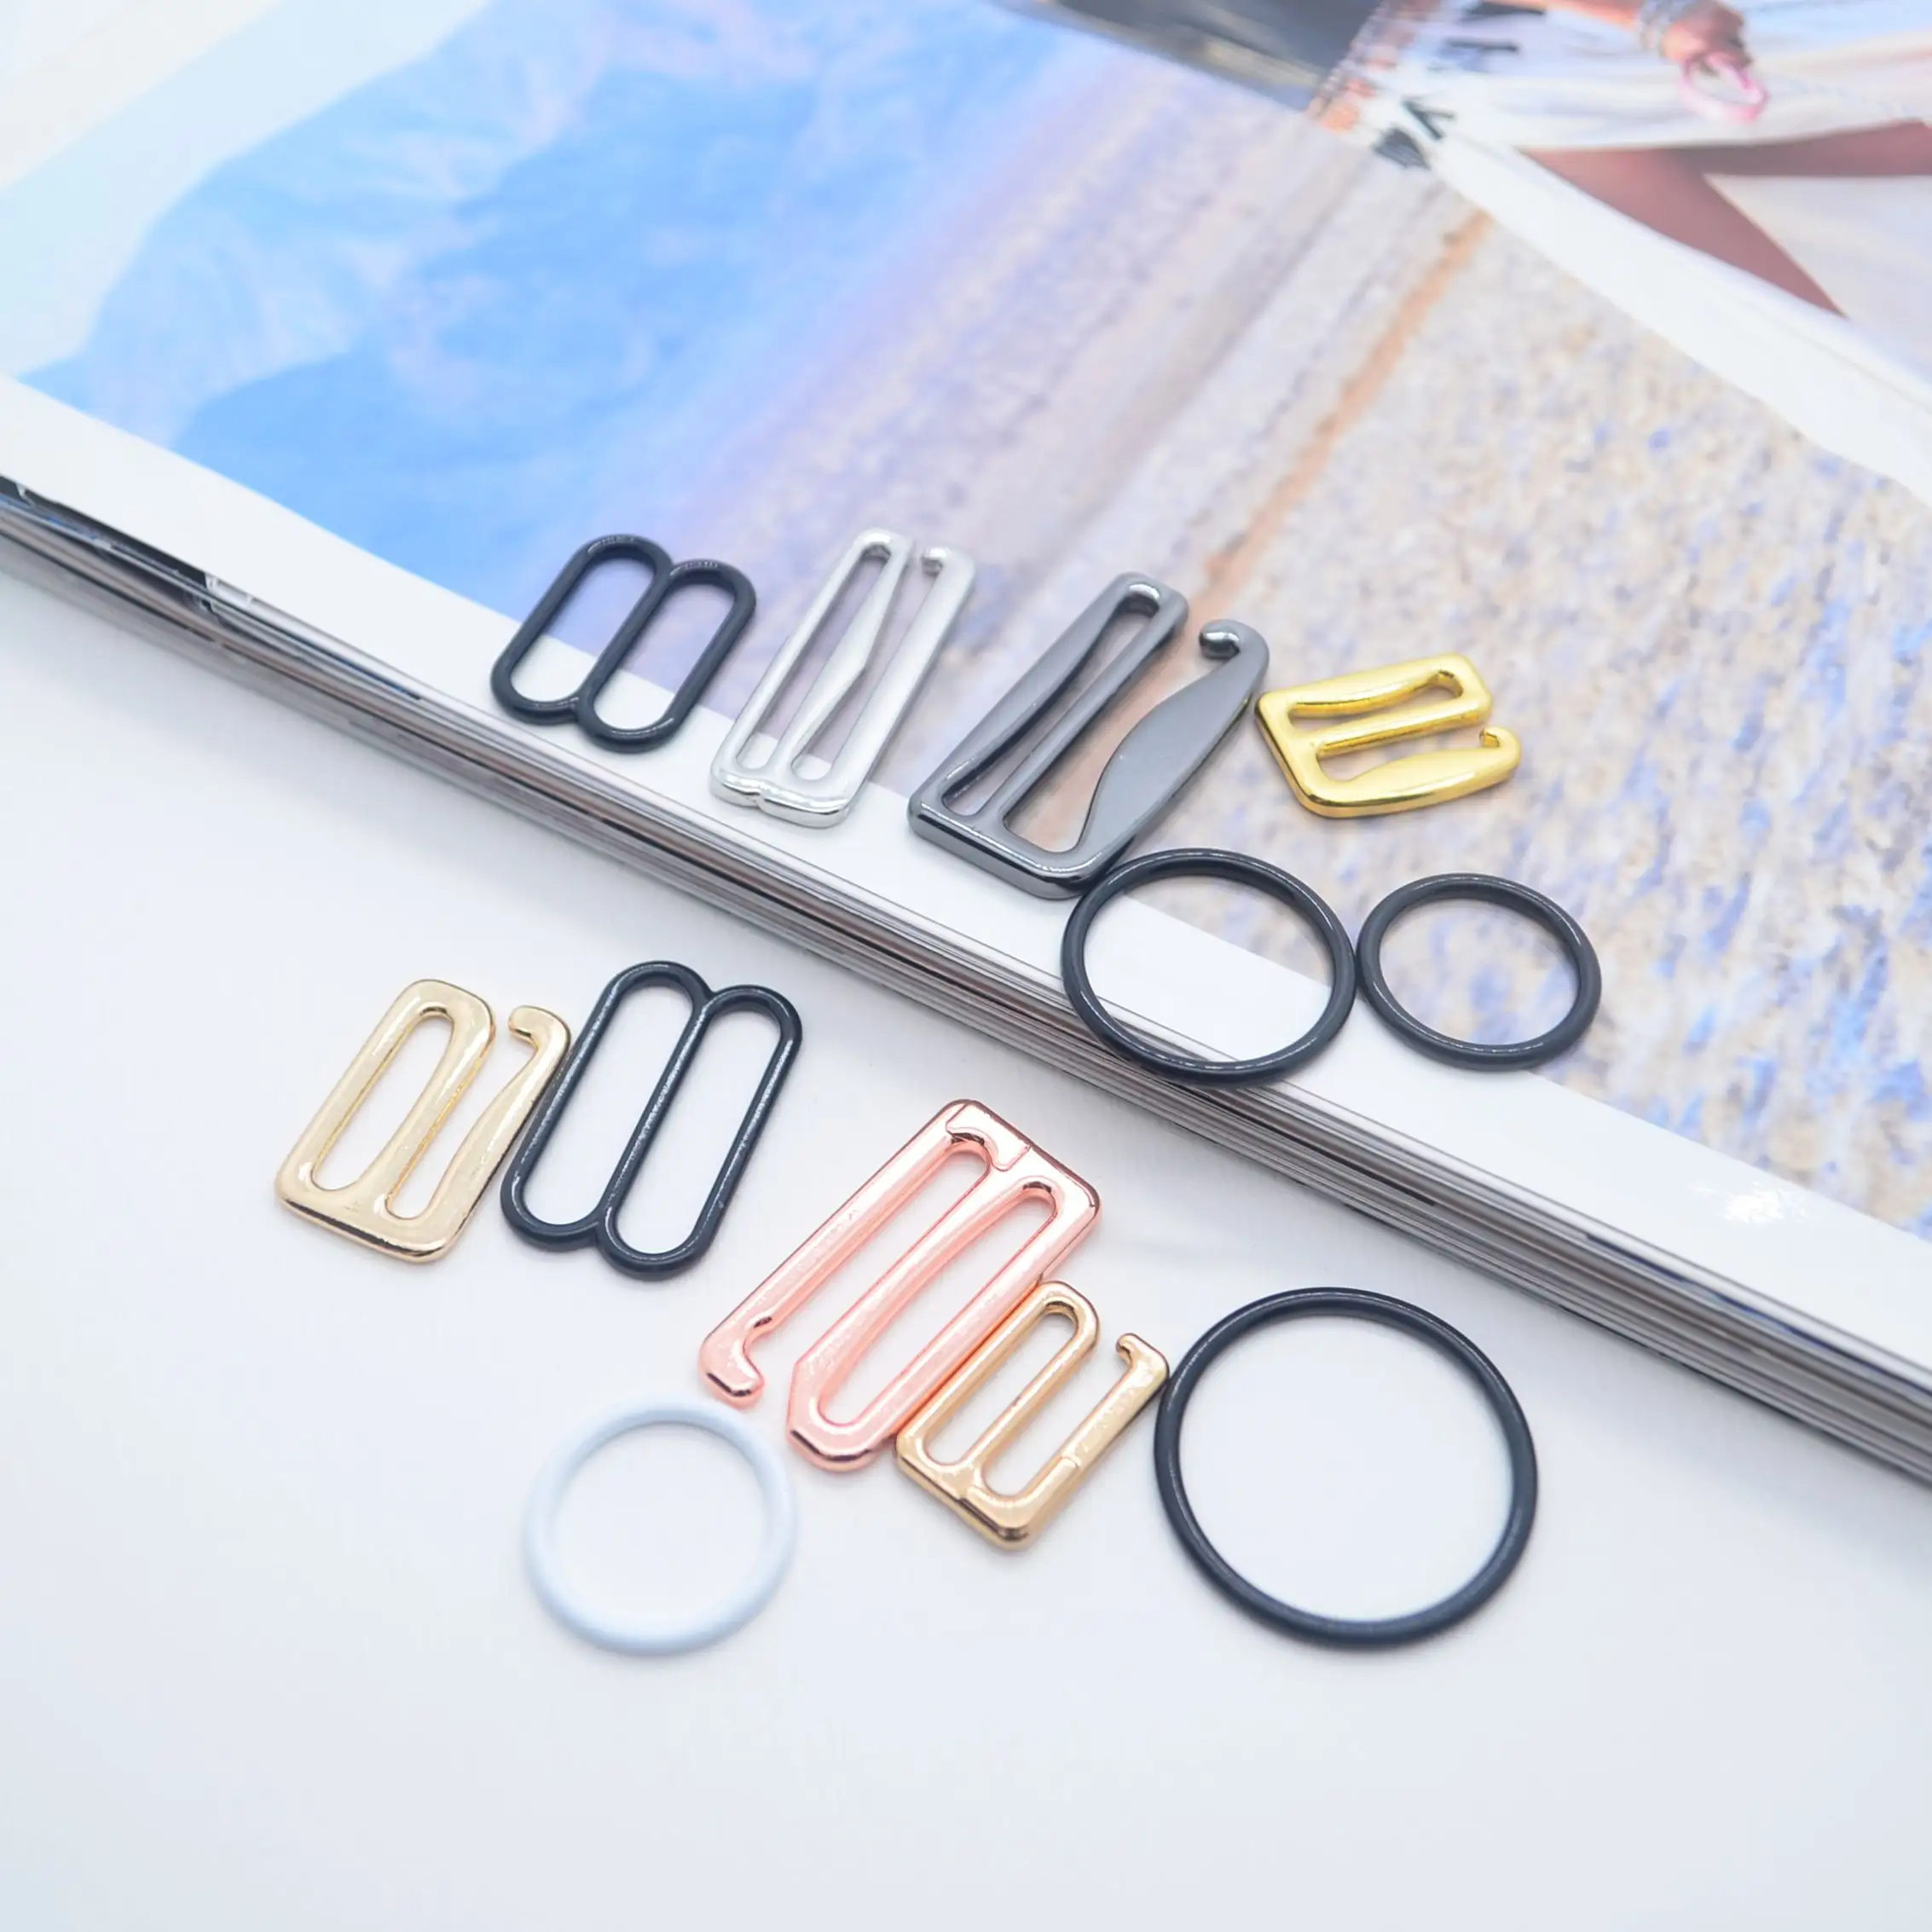 Penyesuai pakaian renang klip cincin penggeser Bra kait dan aksesori Bra mata pakaian dalam wanita ramah lingkungan OEM logam kualitas tinggi